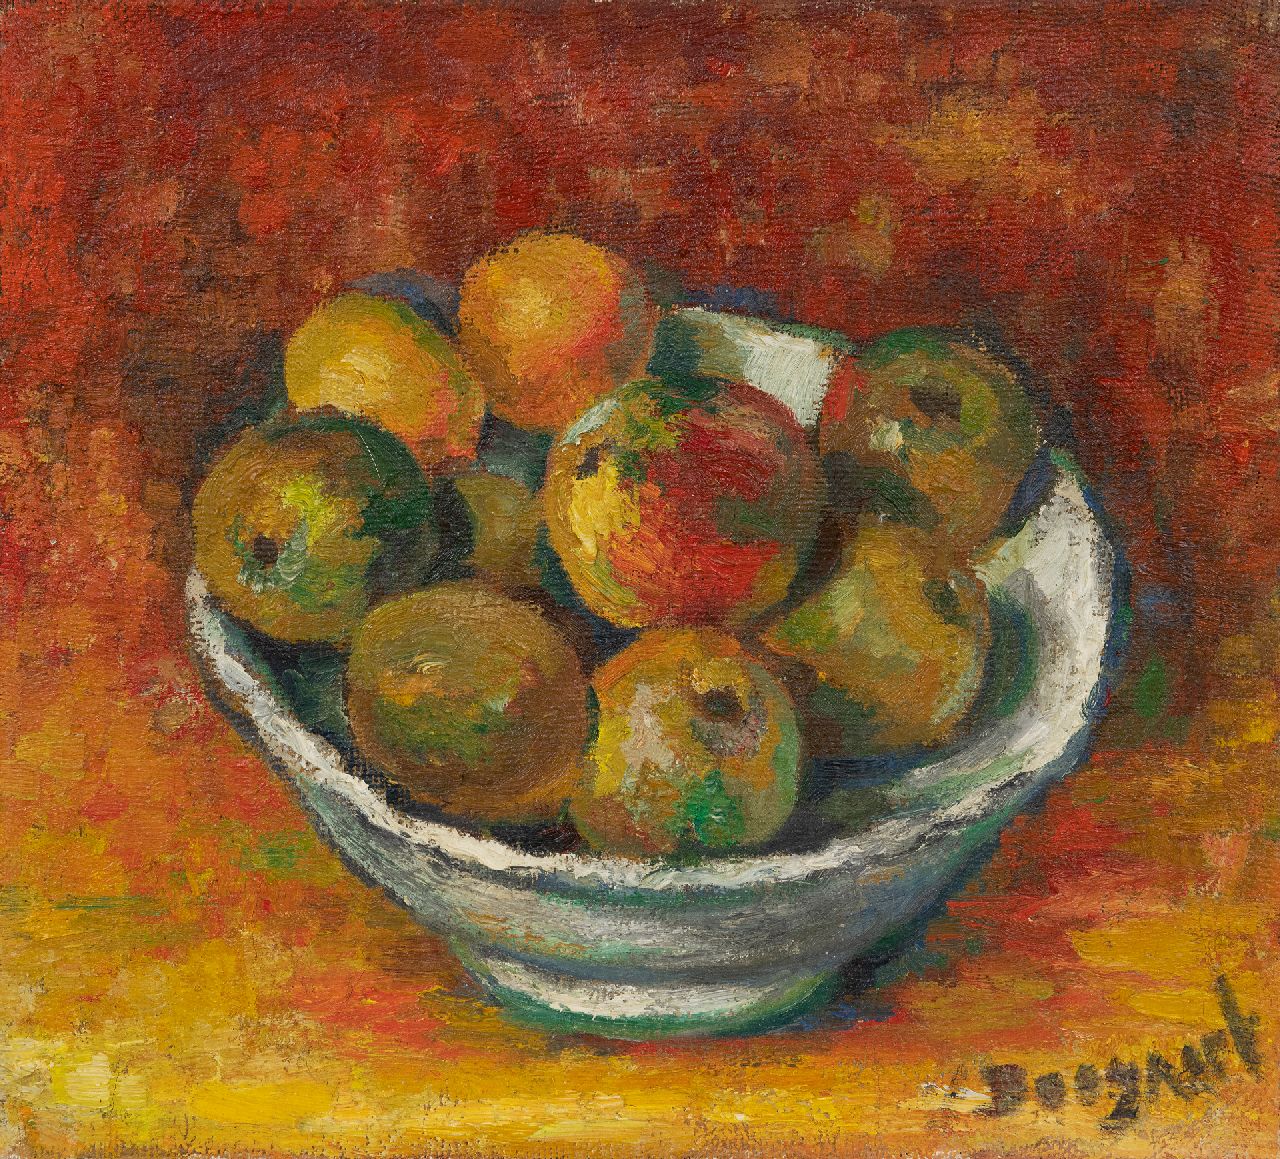 Bram Bogart | Stilleven met appels, olieverf op doek, 40,3 x 45,1 cm, gesigneerd r.o.